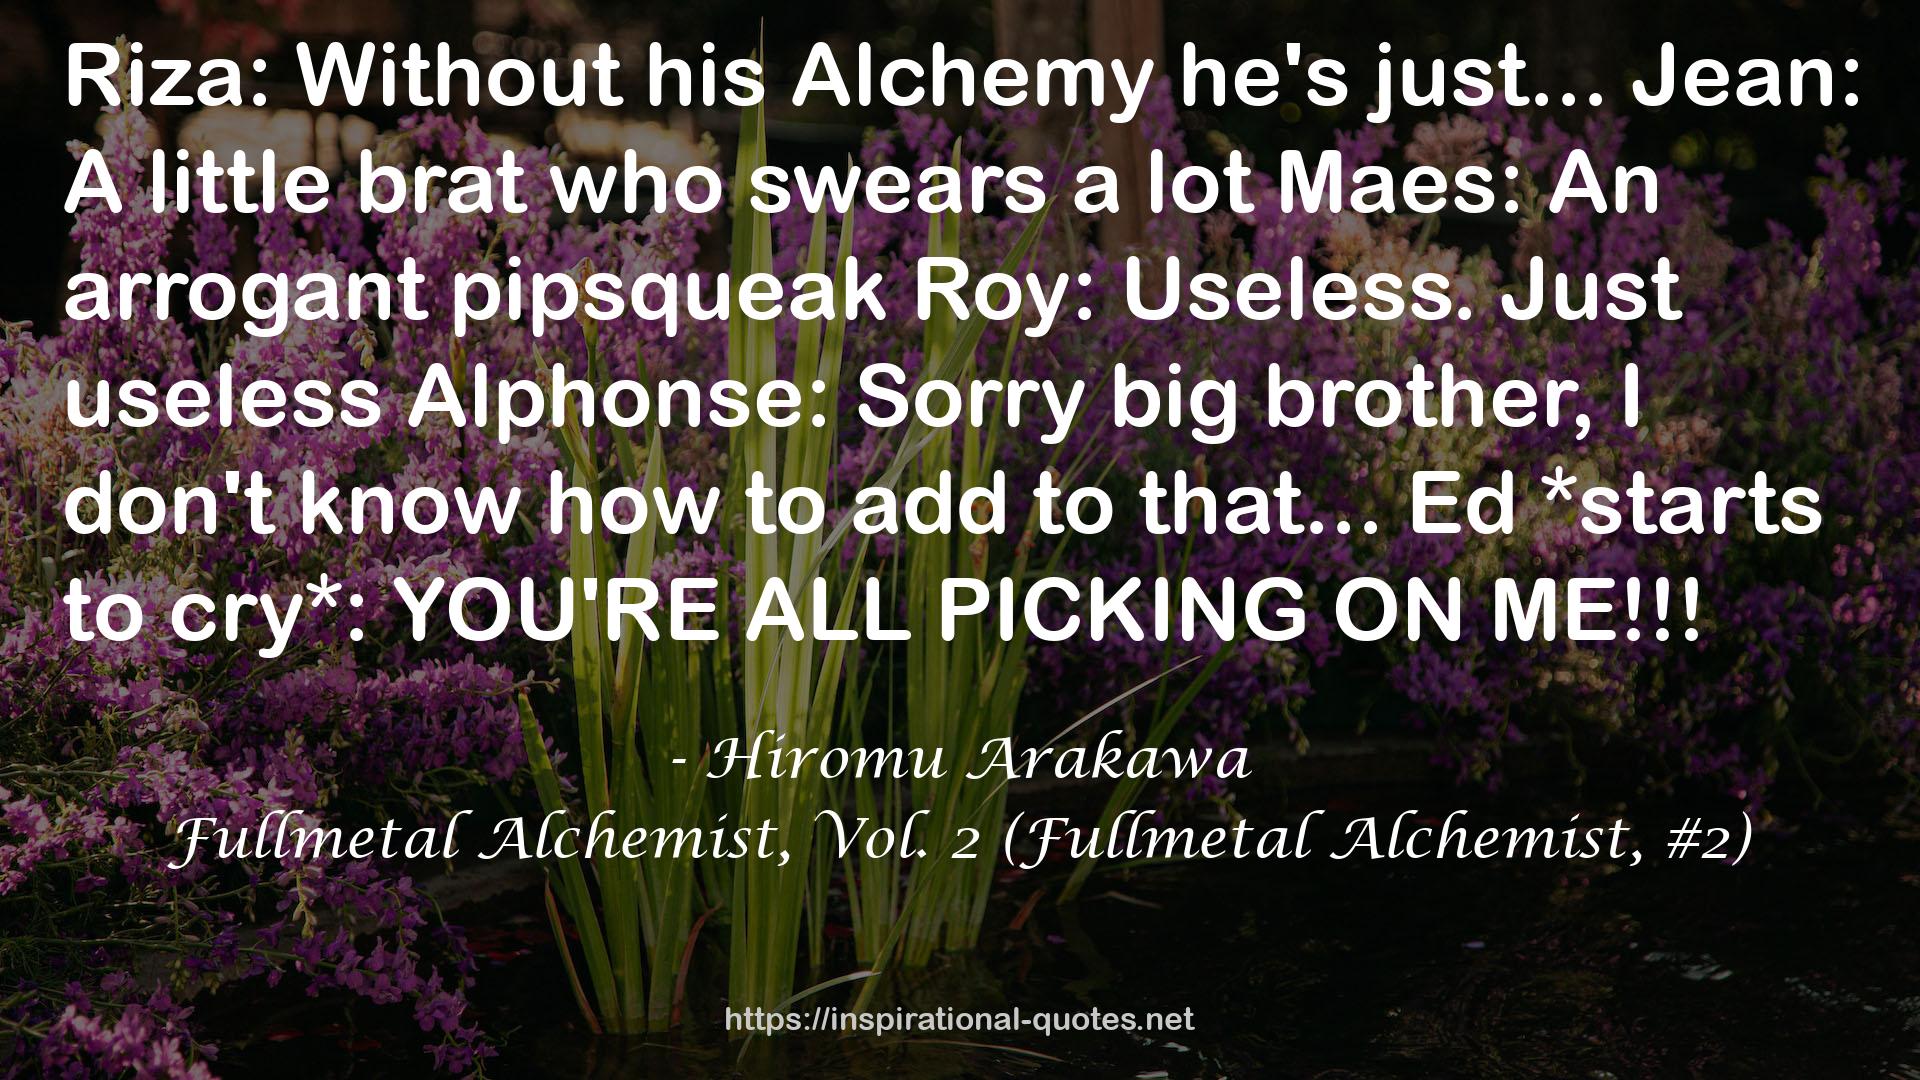 Fullmetal Alchemist, Vol. 2 (Fullmetal Alchemist, #2) QUOTES